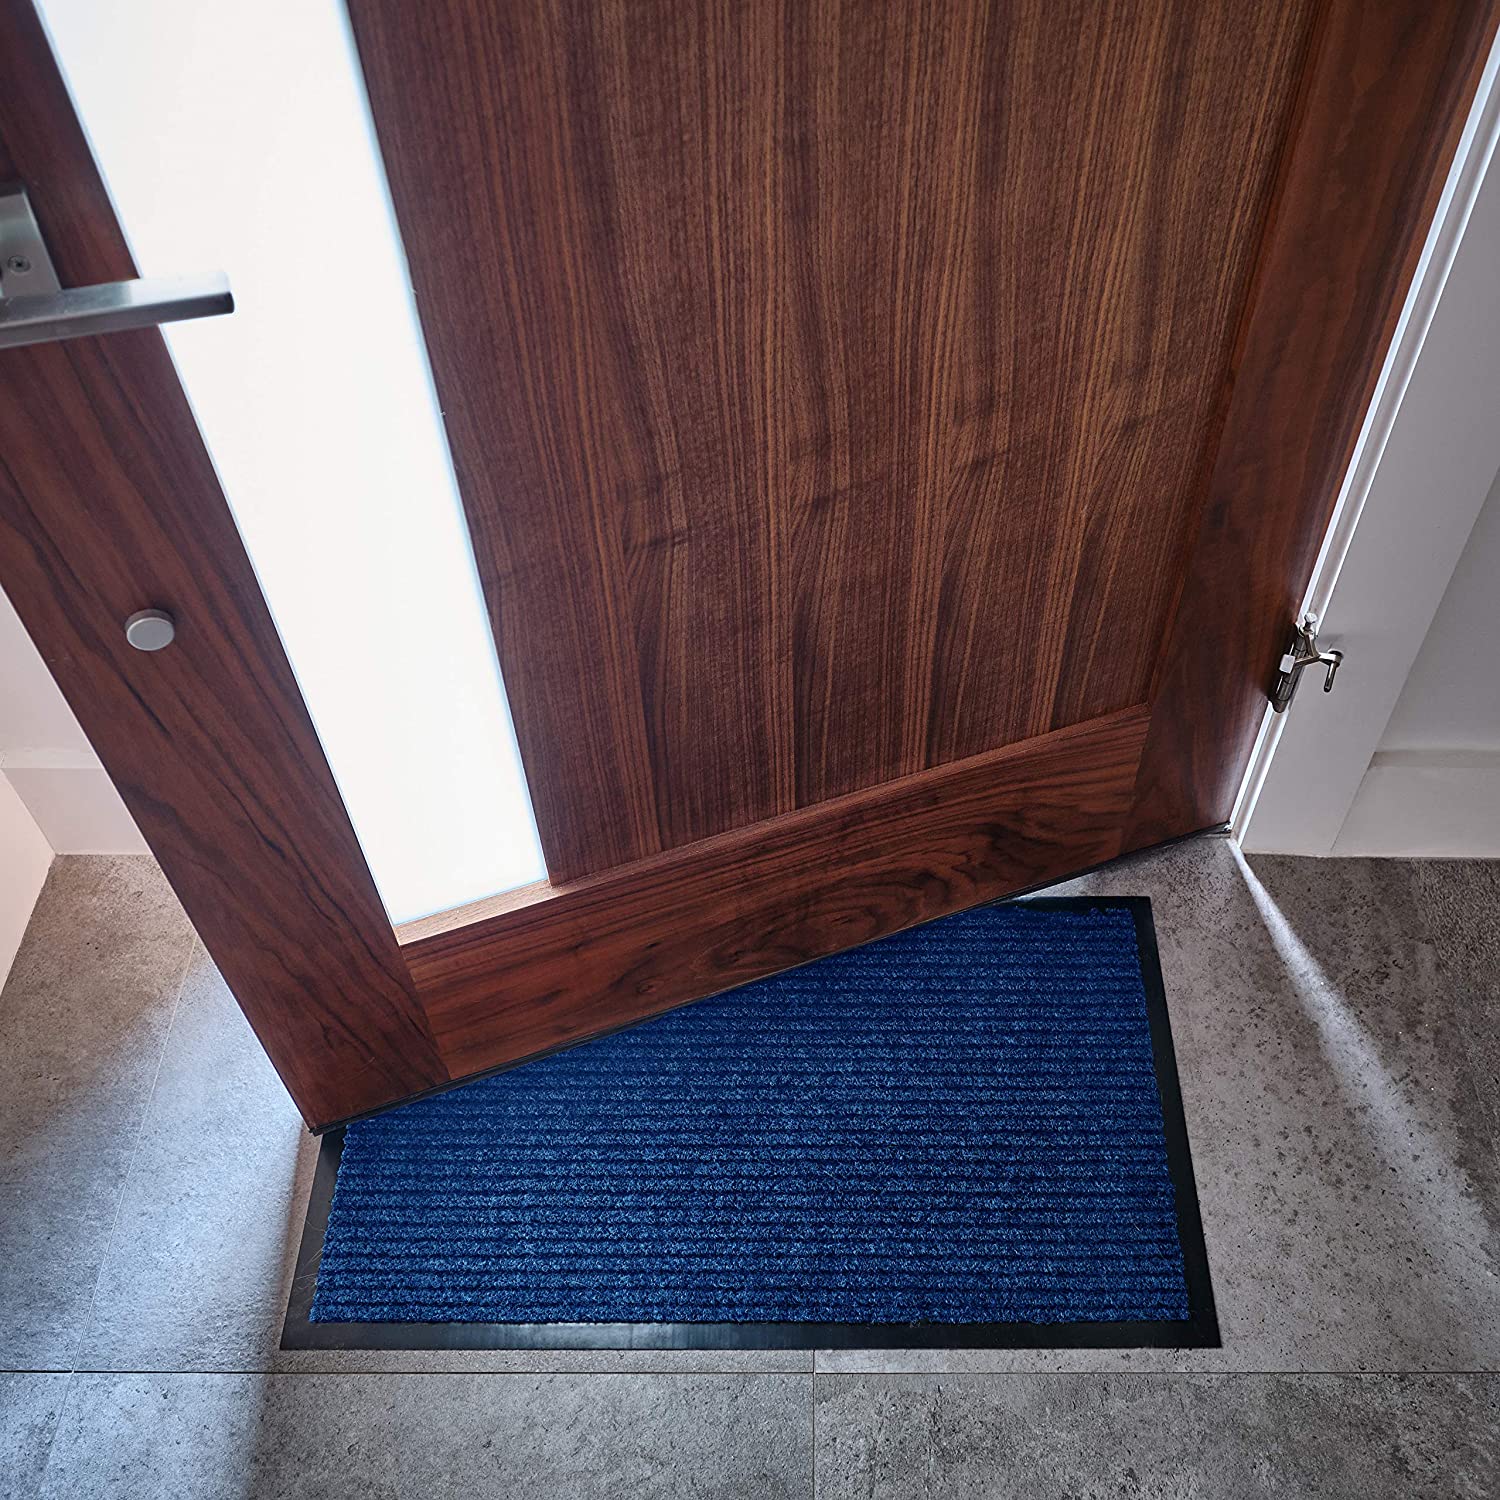 Barnyard Designs 'Welcome' Doormat Welcome Mat for Outdoors, Large Front  Door Entrance Mat, 30x17, Grey